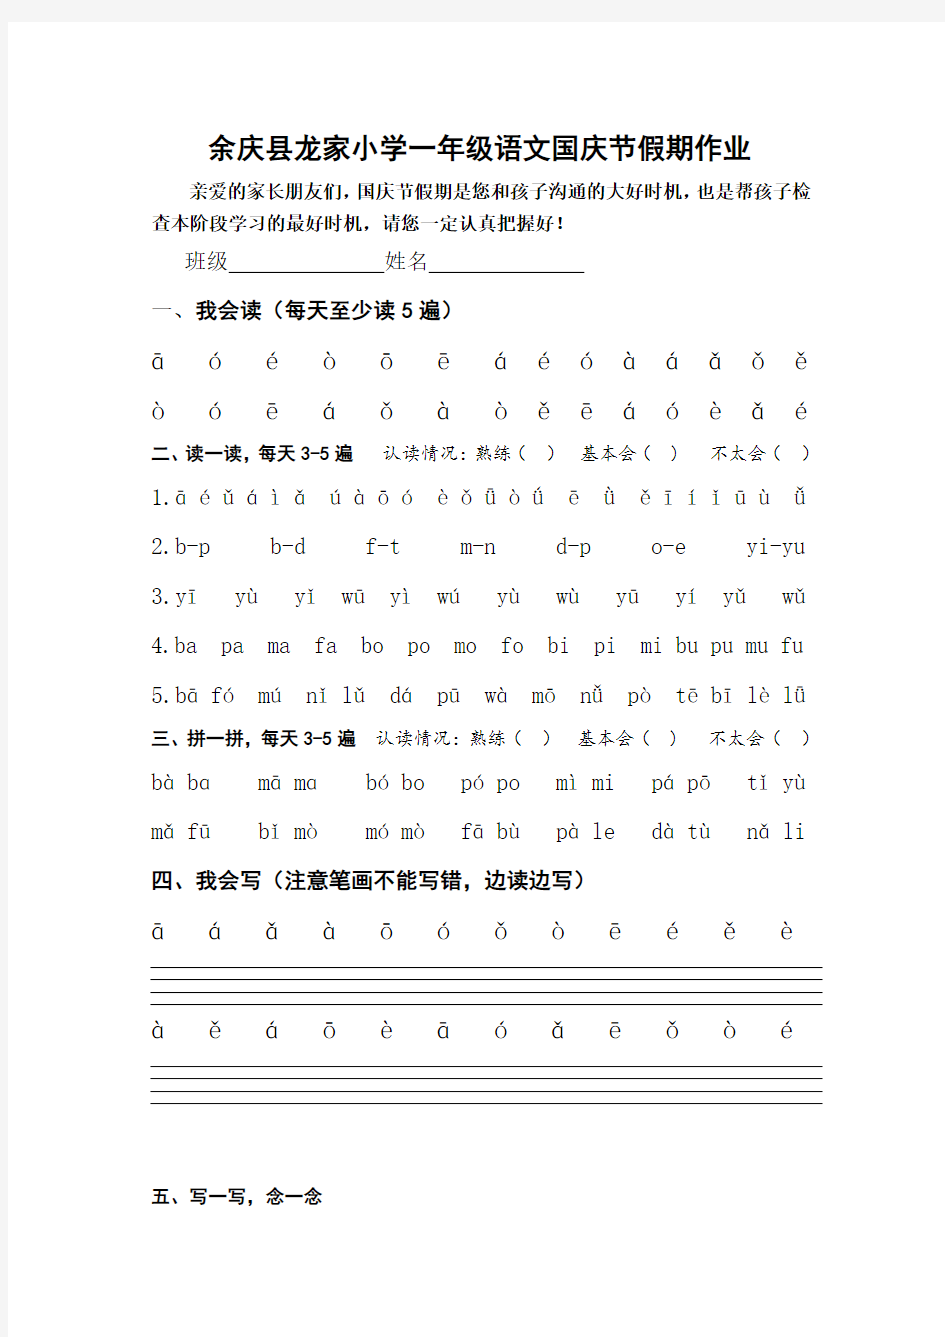 一年级上册语文拼音国庆节作业安排1